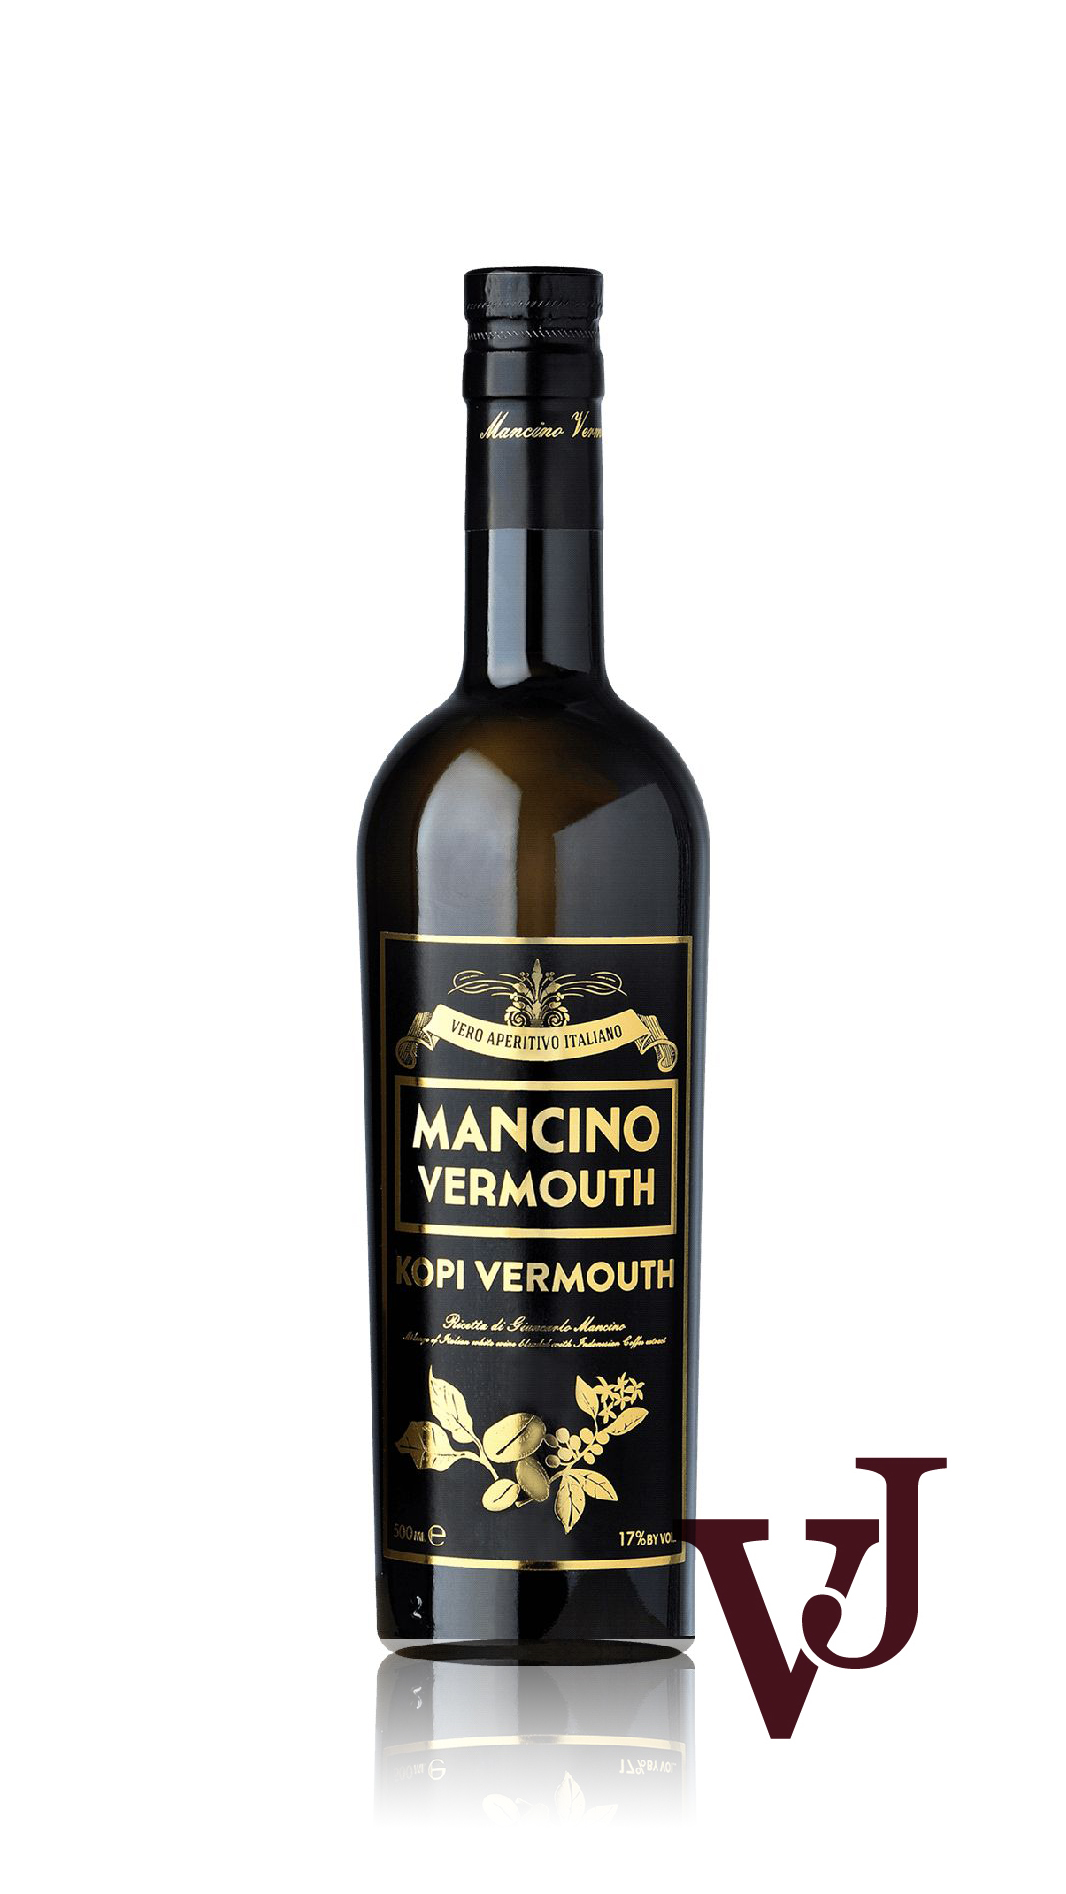 Övrigt vin - Mancino Vermouth Kopi artikel nummer 7138802 från producenten Giancarlo Mancino från området Italien